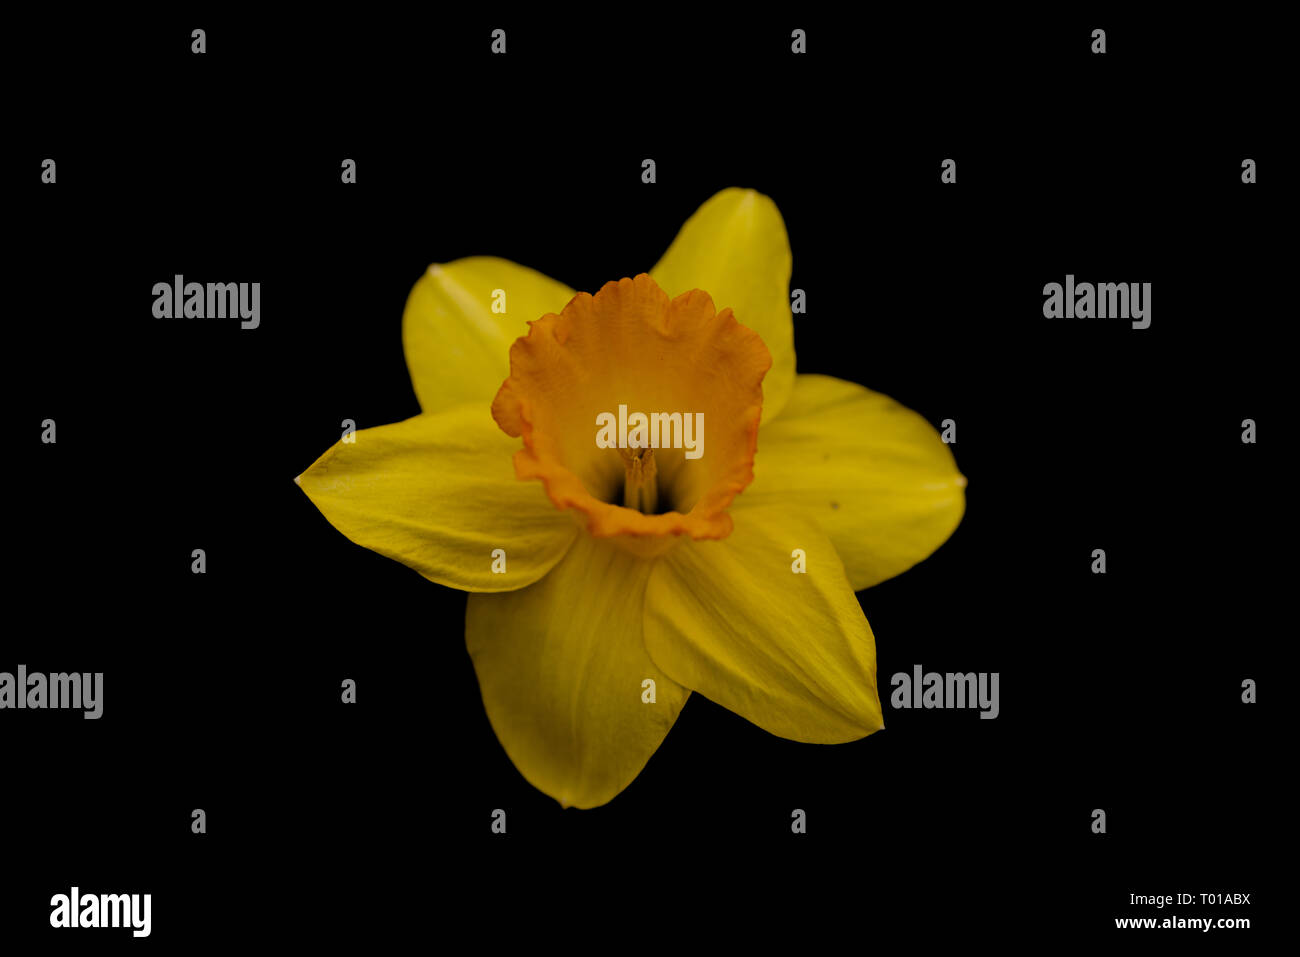 Immagine di un daffodil contro uno sfondo nero. La curva di tonalità è stata modificata. Foto Stock